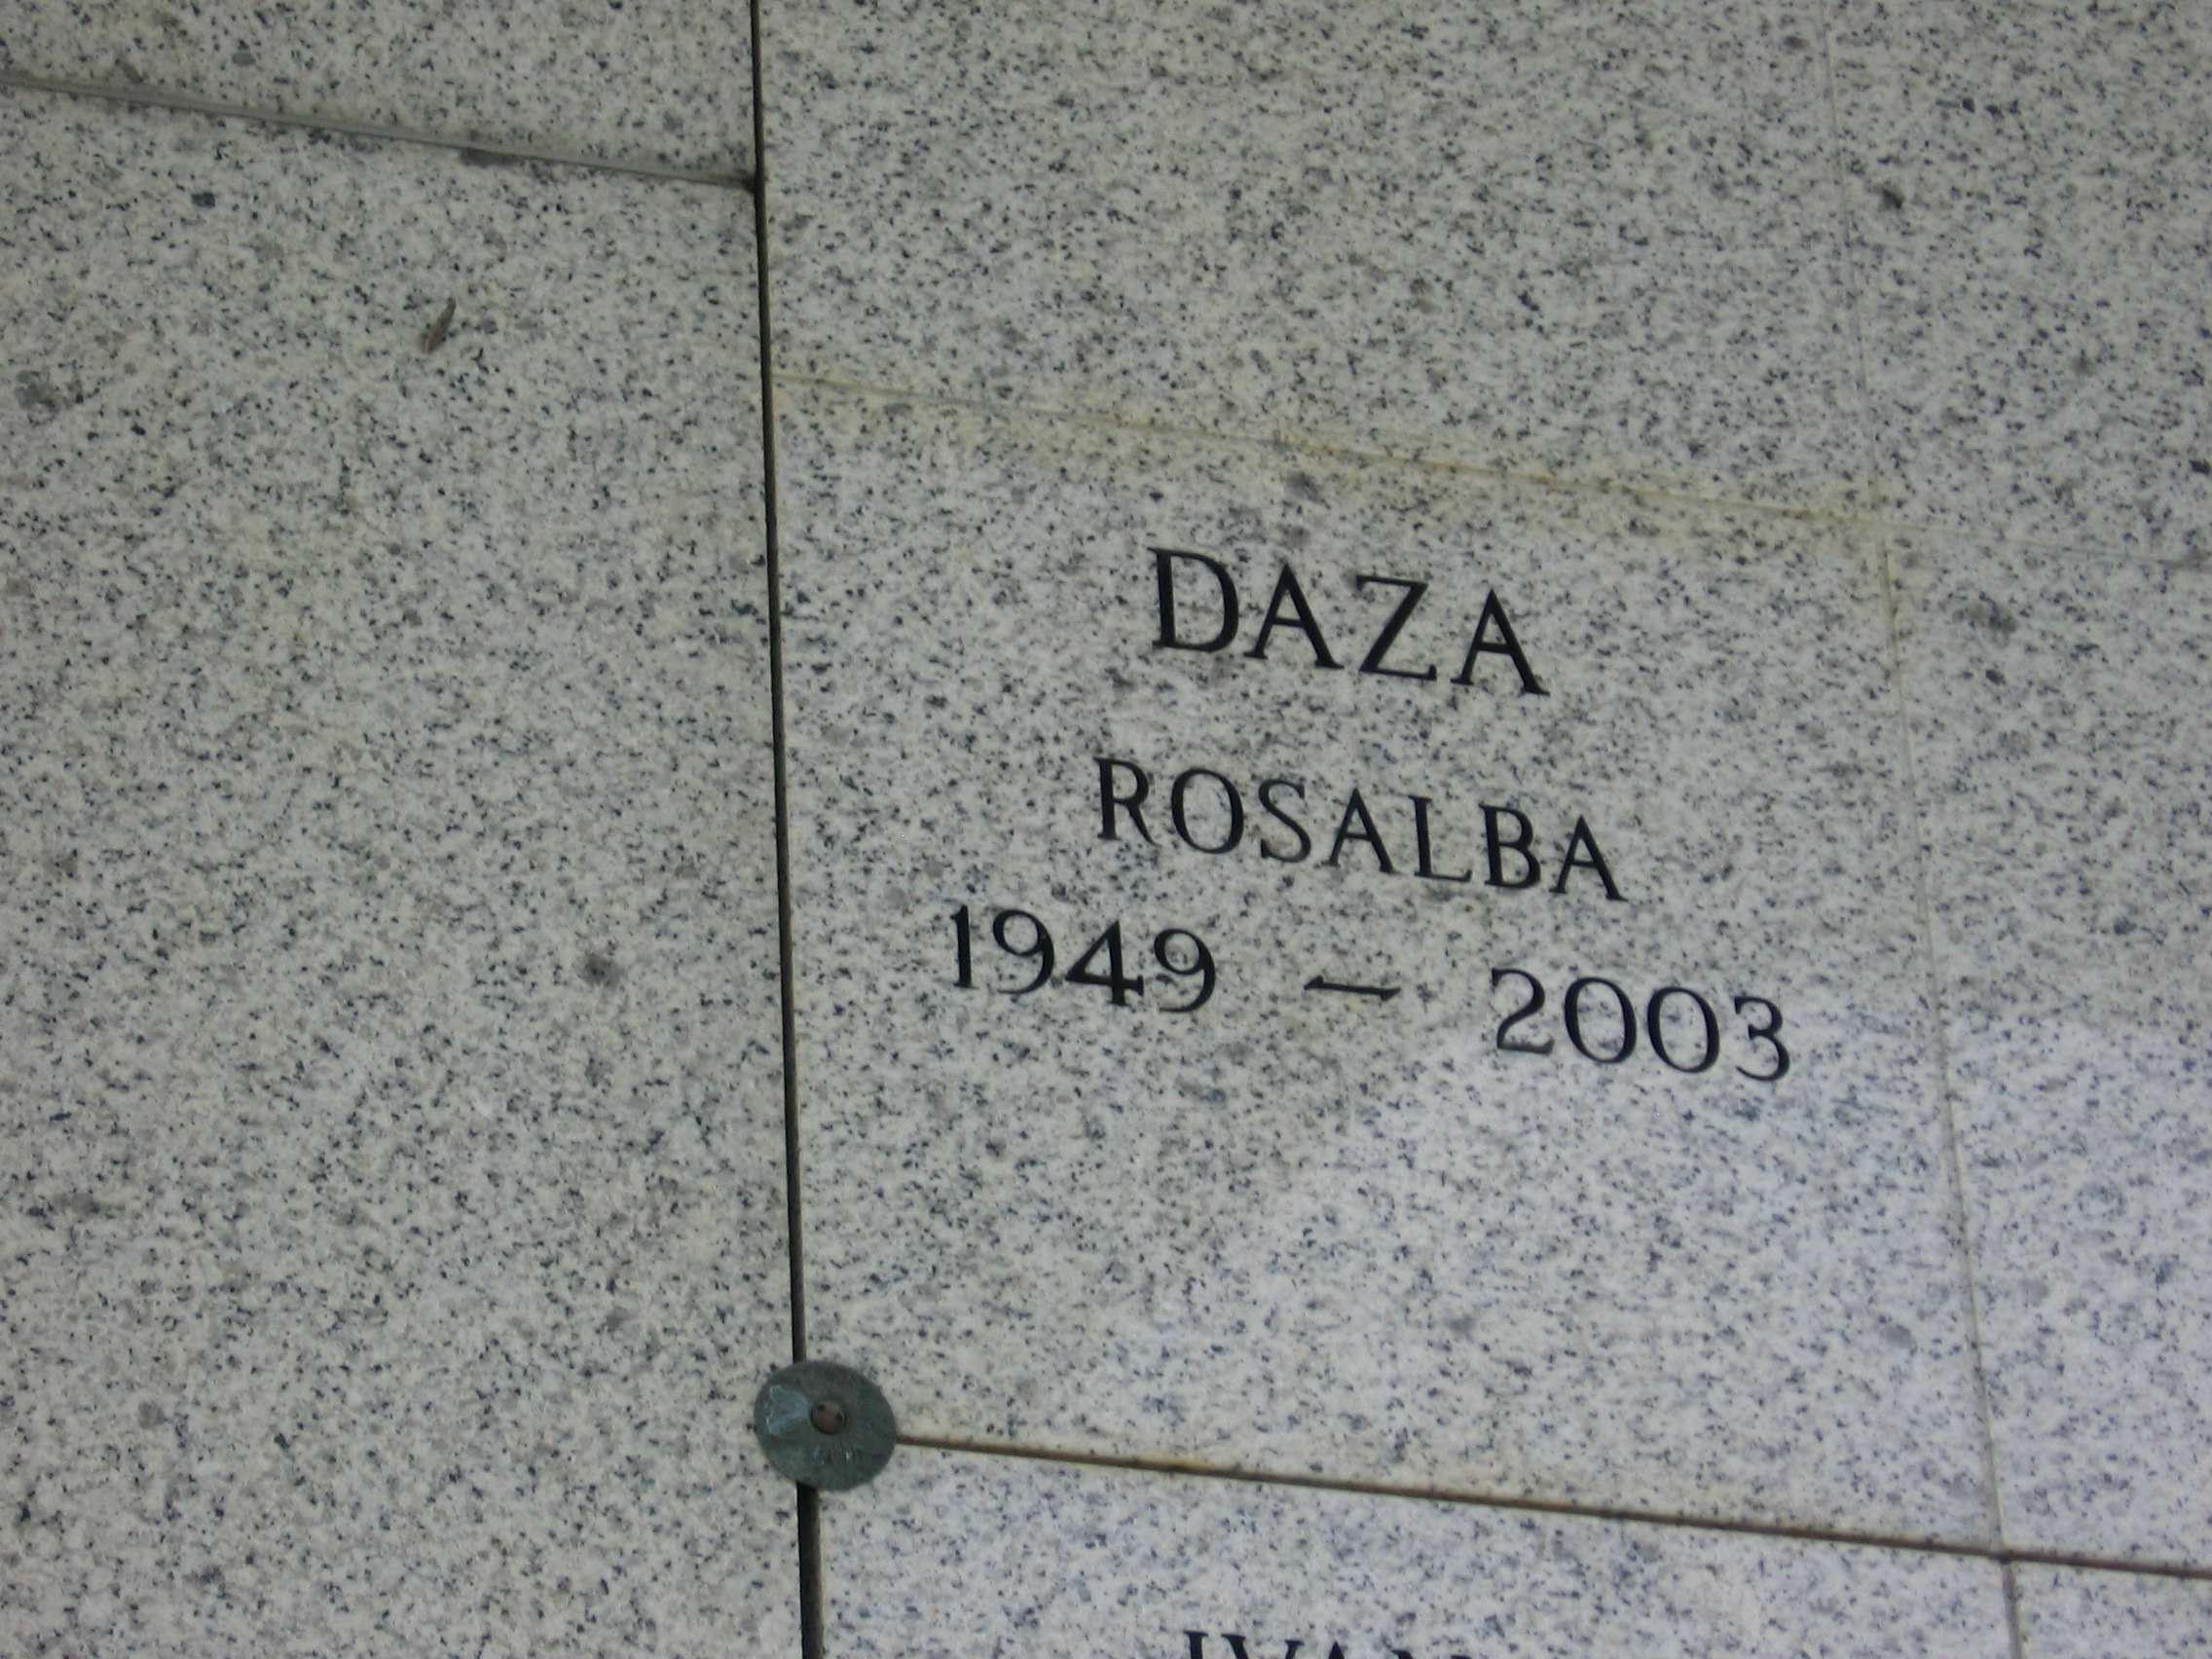 Rosalba Daza